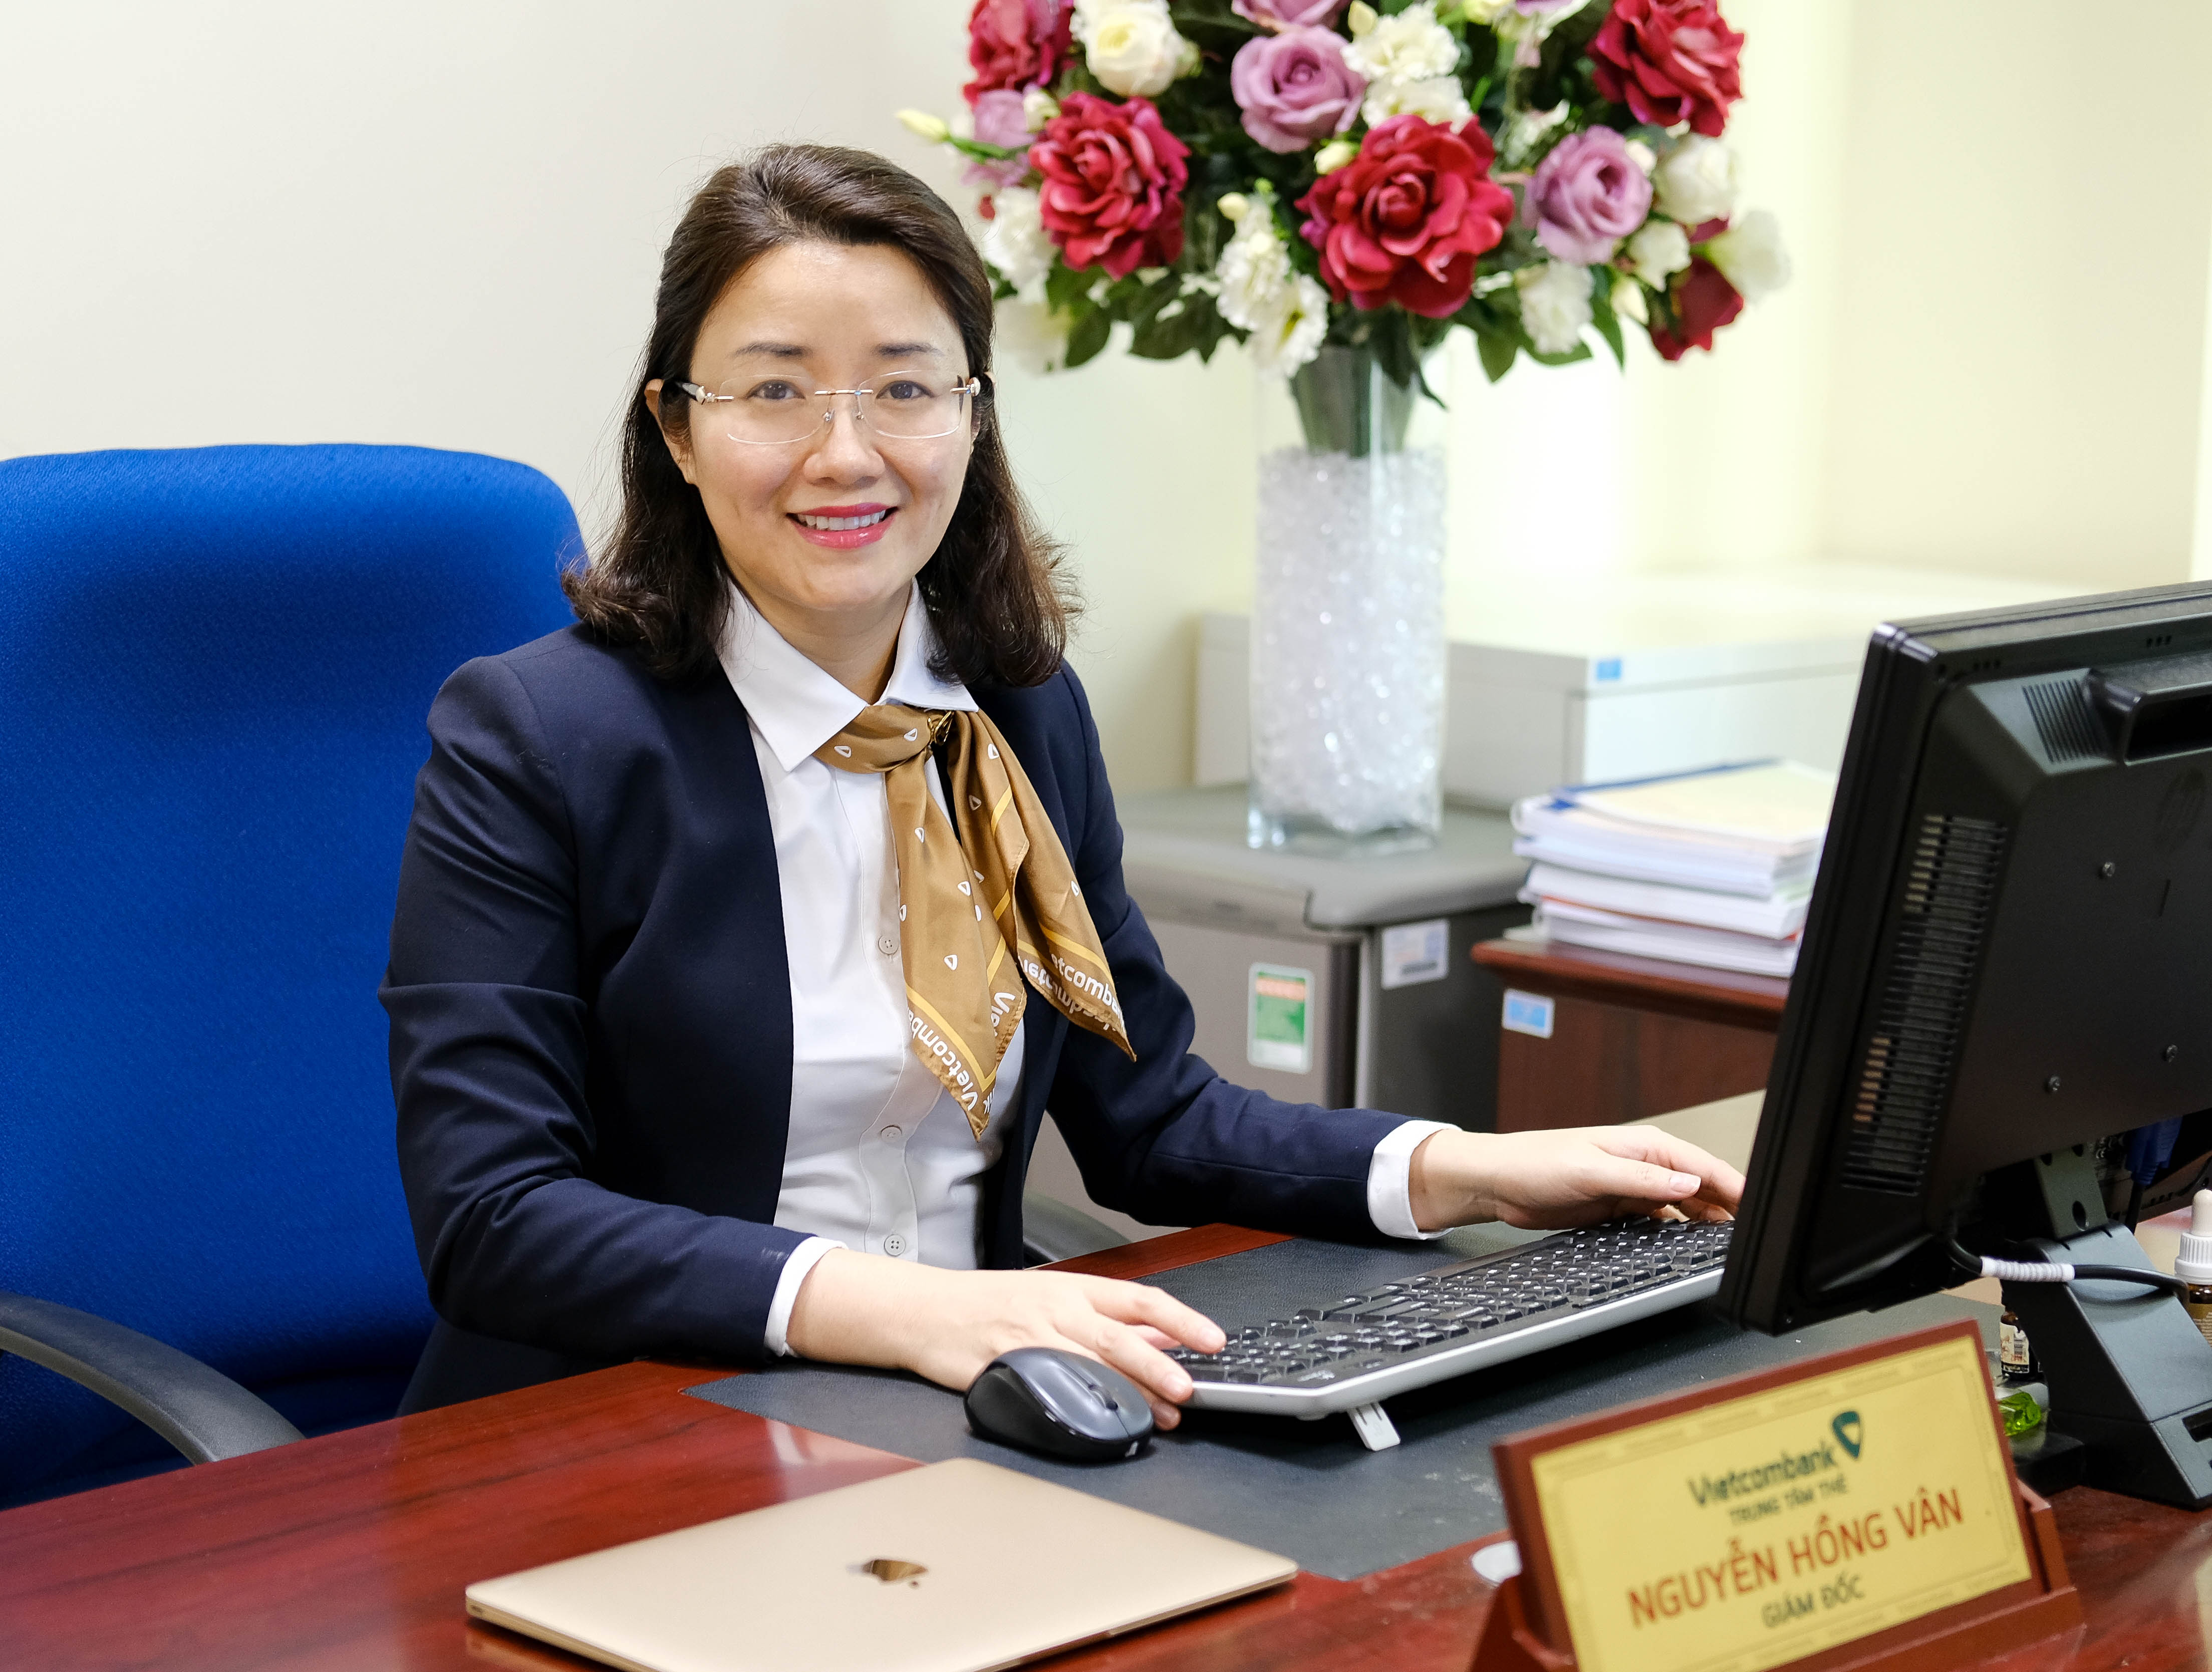 Bà Nguyễn Hồng Vân - Giám đốc Trung tâm thẻ của Vietcombank